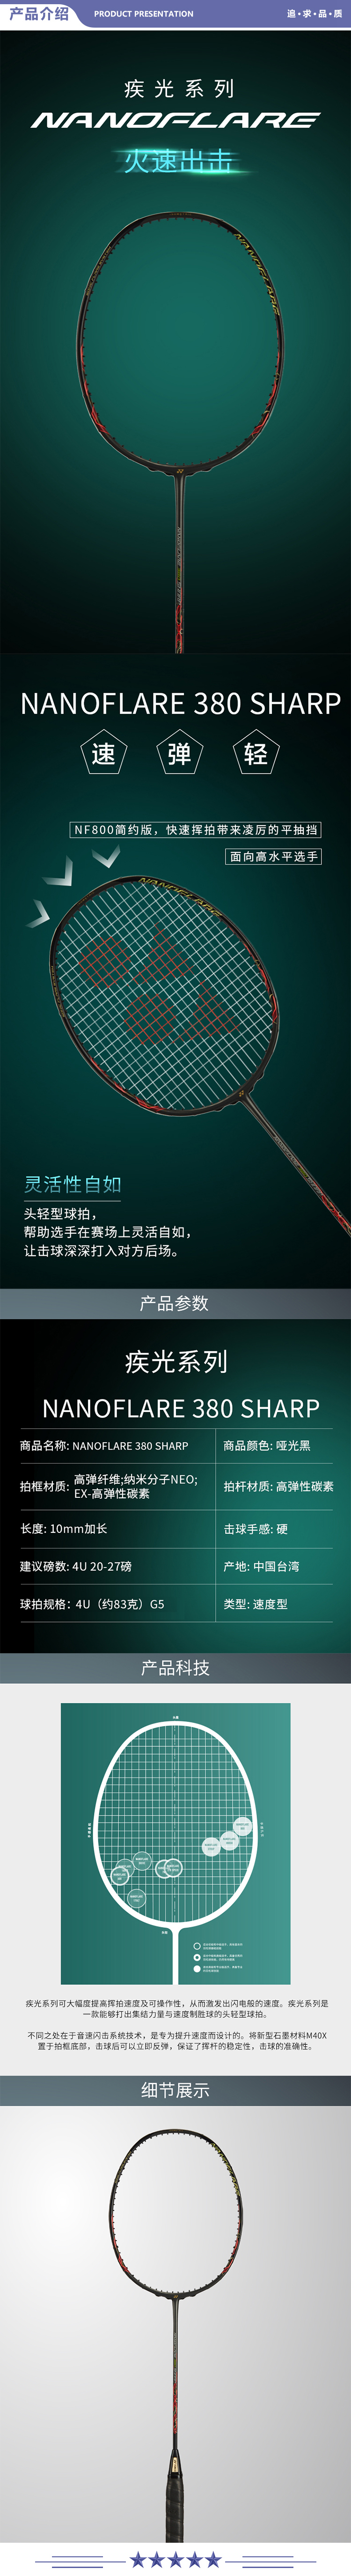 尤尼克斯 NF380 羽毛球拍全碳素疾光闪攻火速出击音速哑光黑4U5 未穿线附手胶 2.jpg